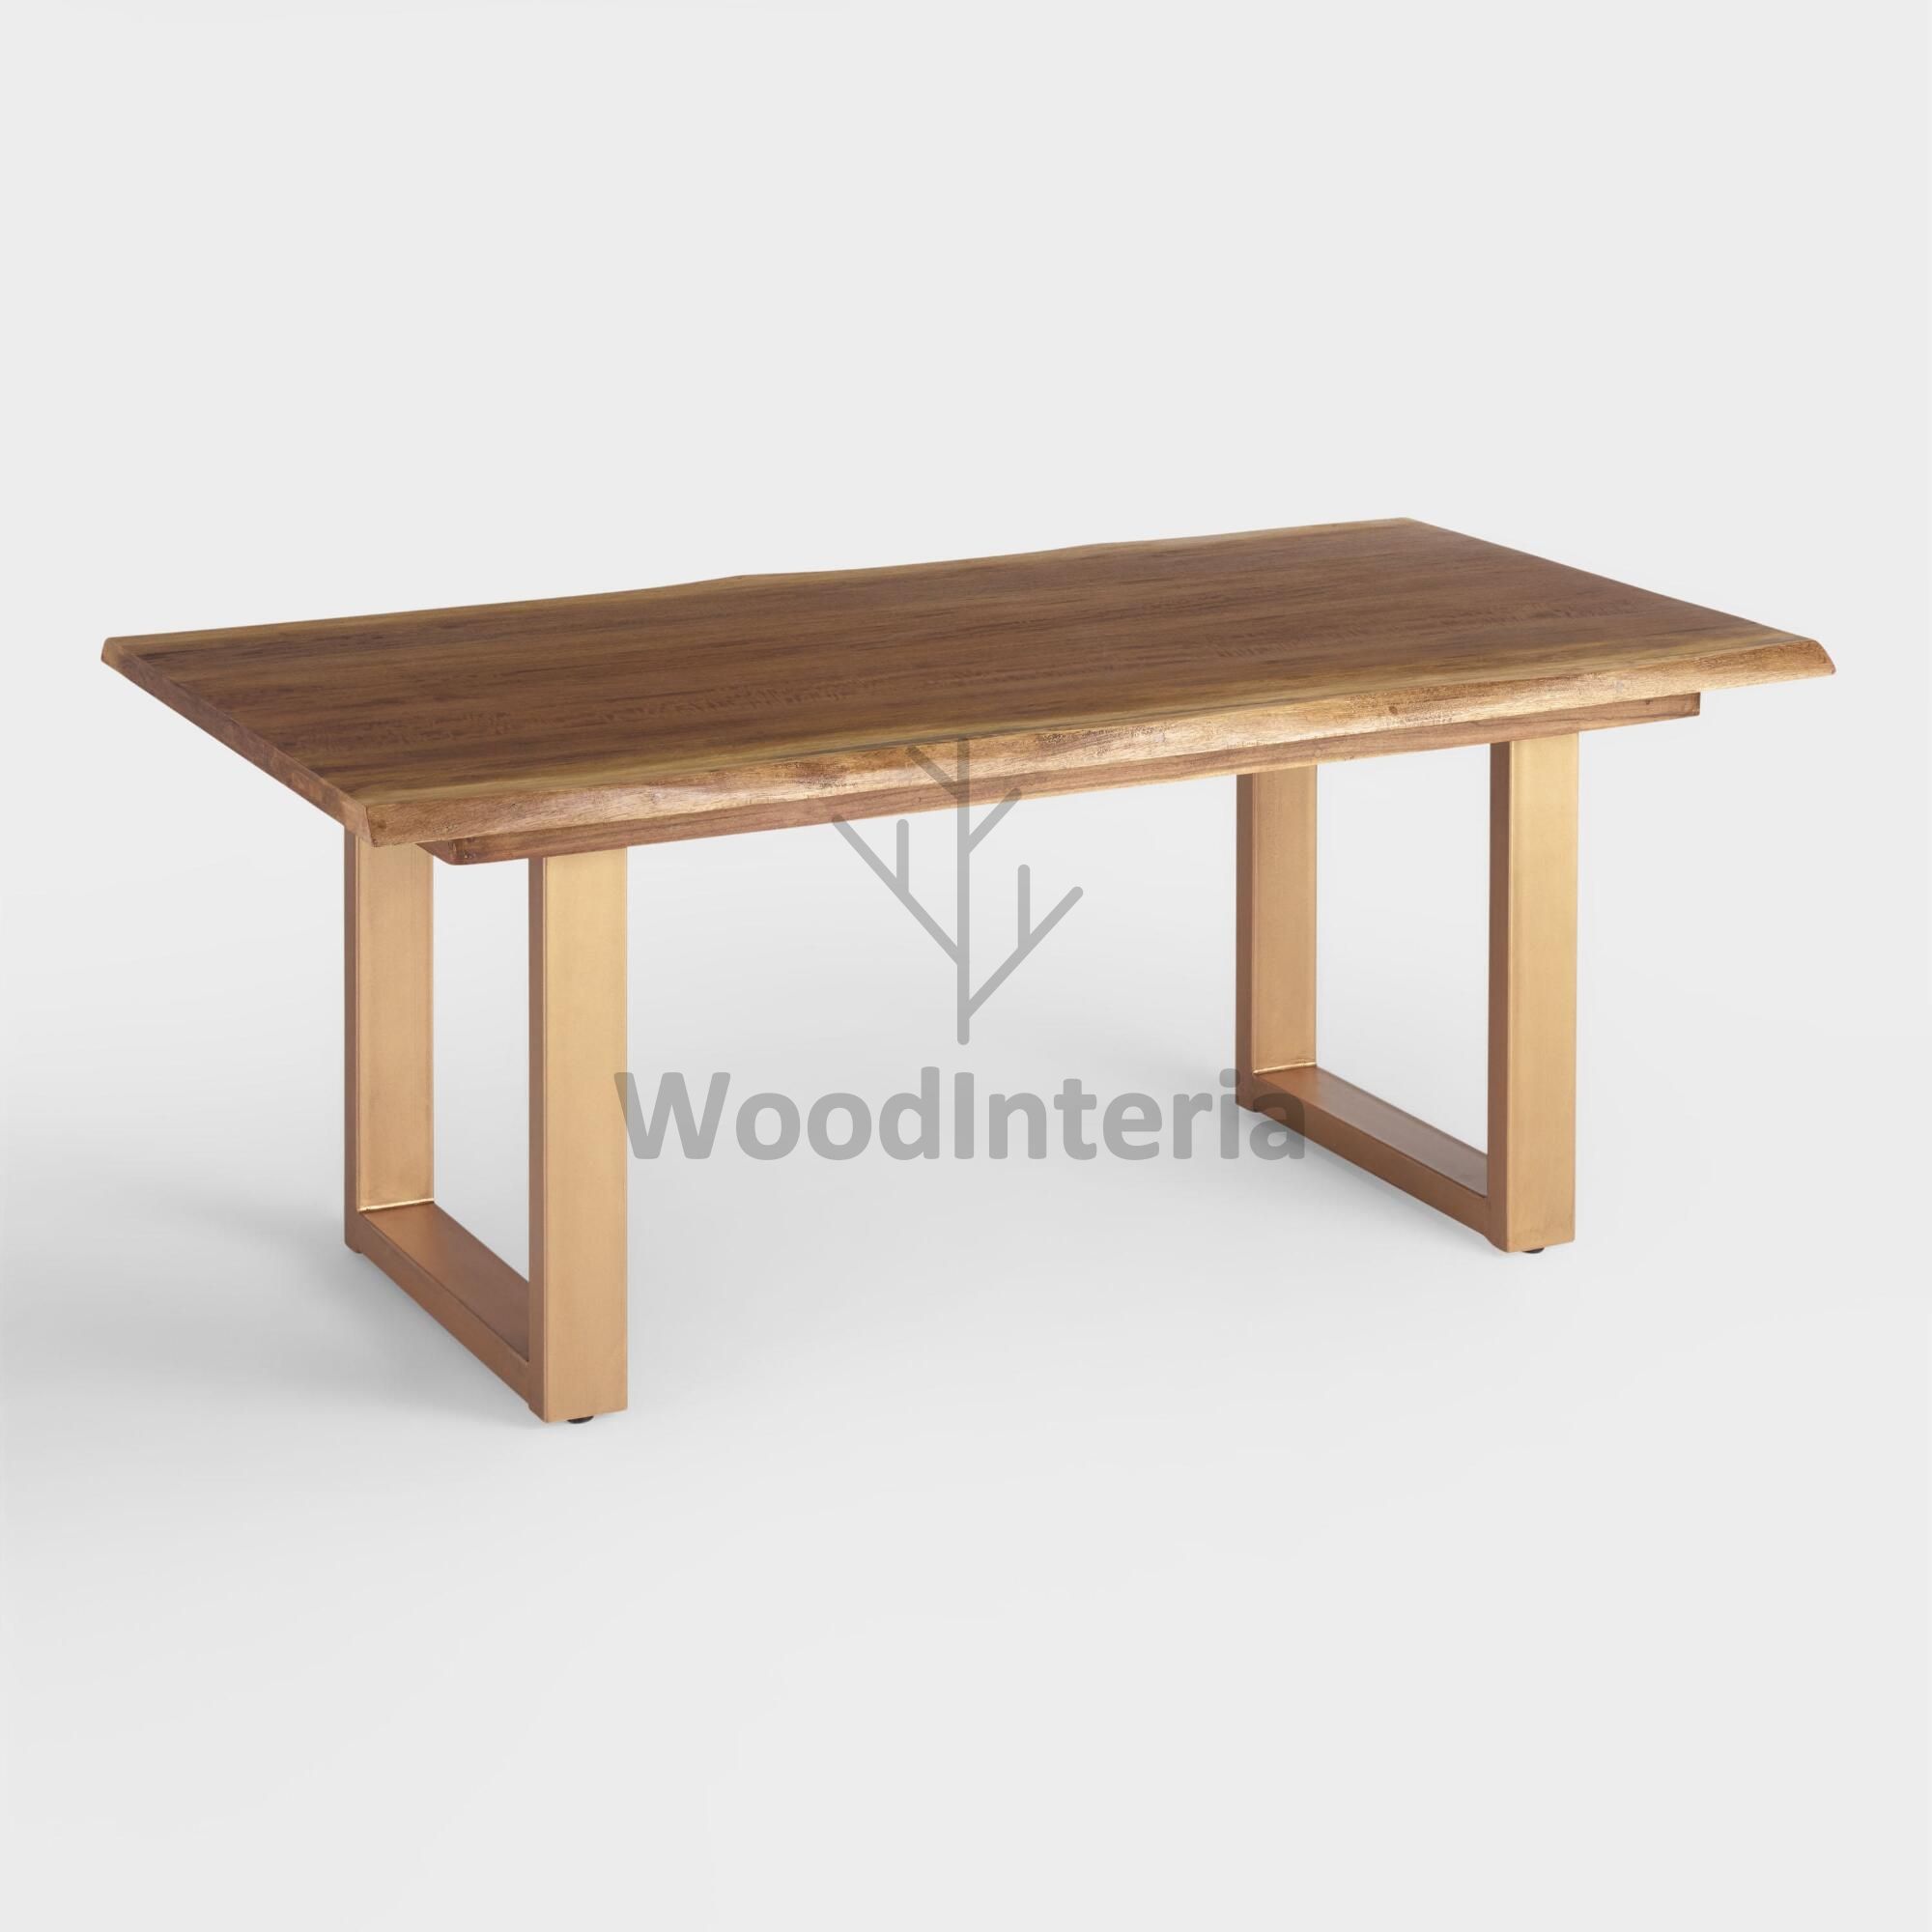 фото стол обеденный live edge mist в интерьере лофт эко | WoodInteria